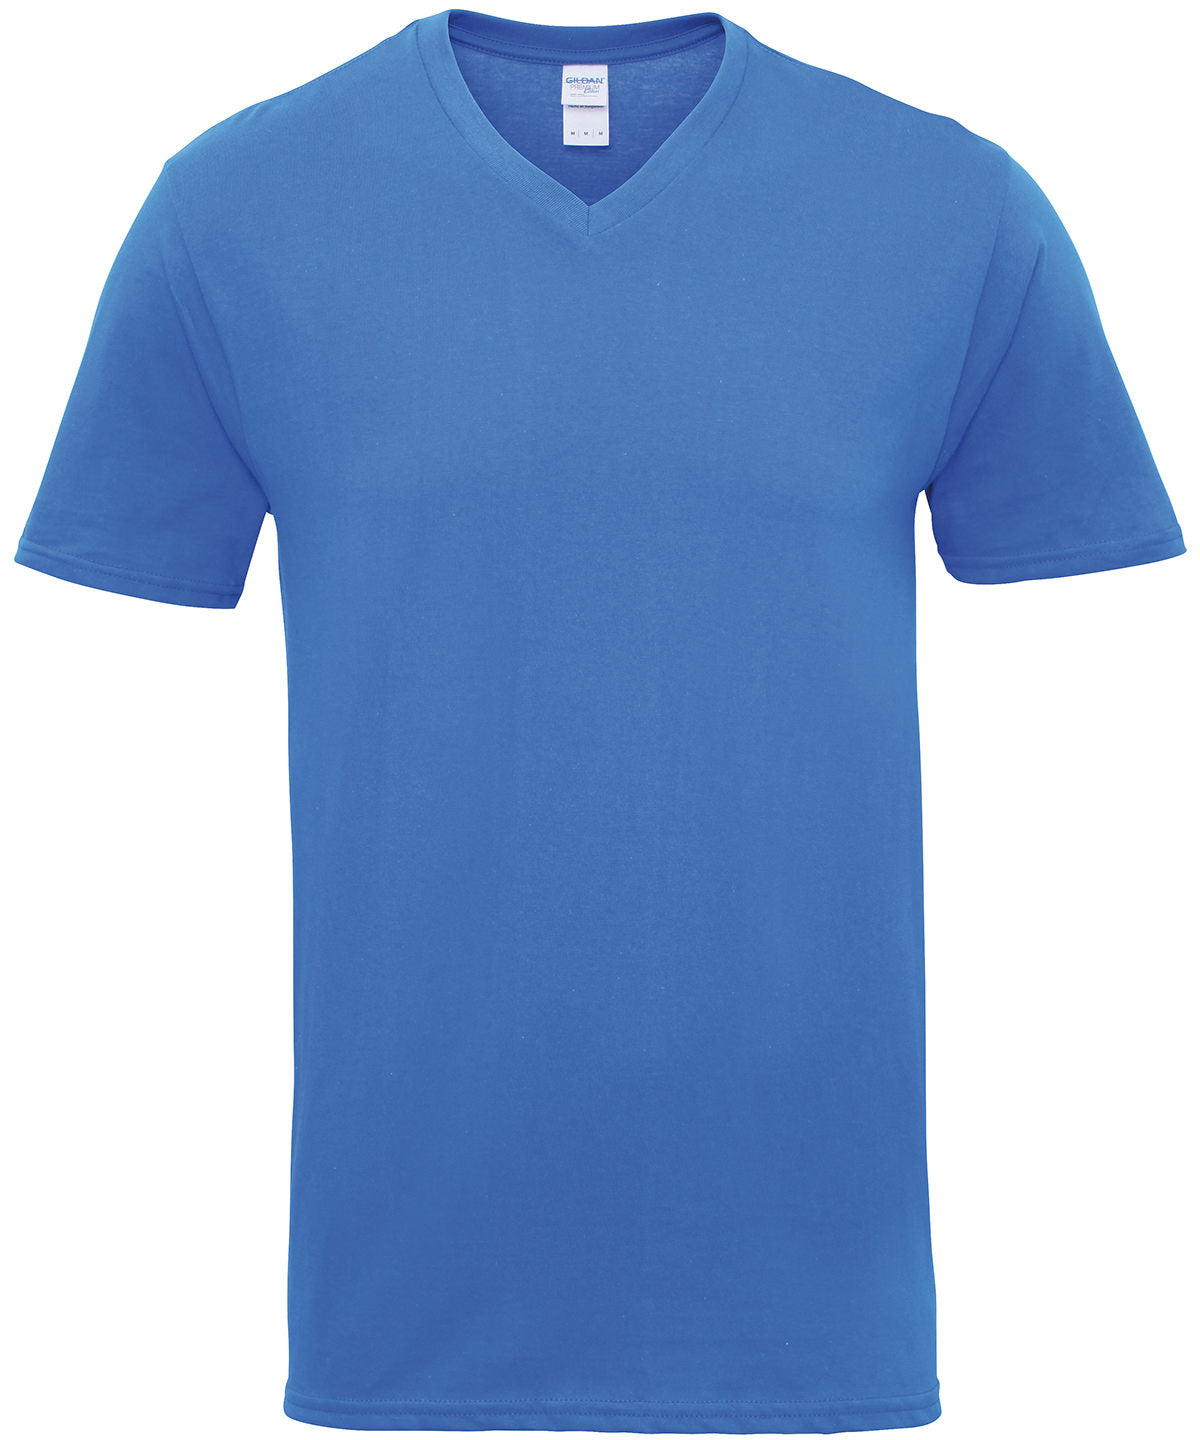 Stuttermabolir - Premium Cotton® Adult V-neck T-shirt